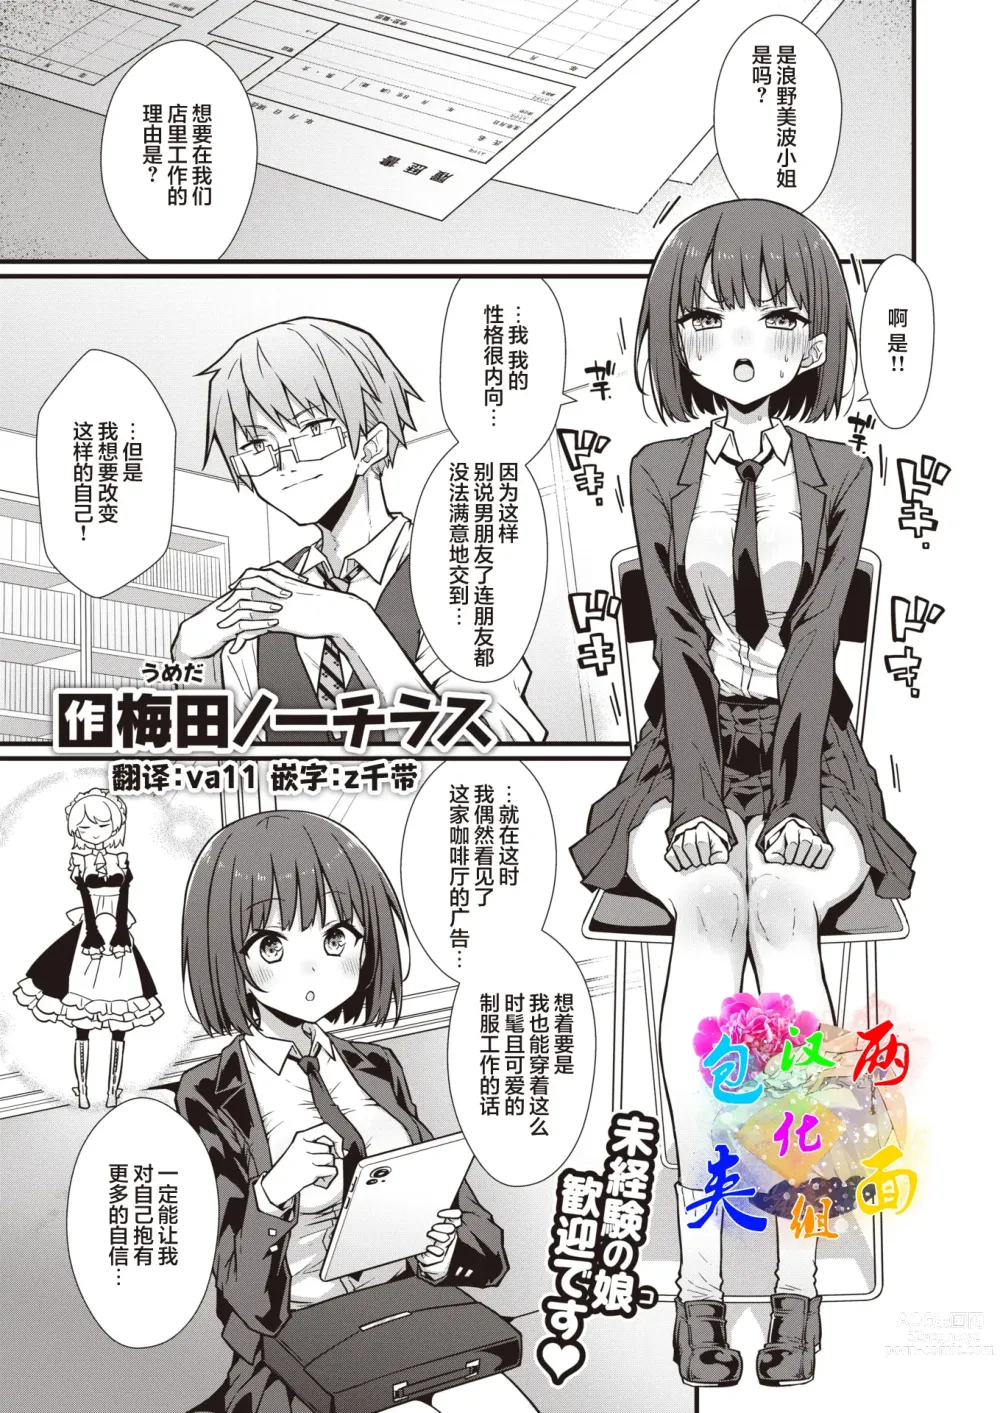 Page 1 of manga Hatarake! Minami-chan!